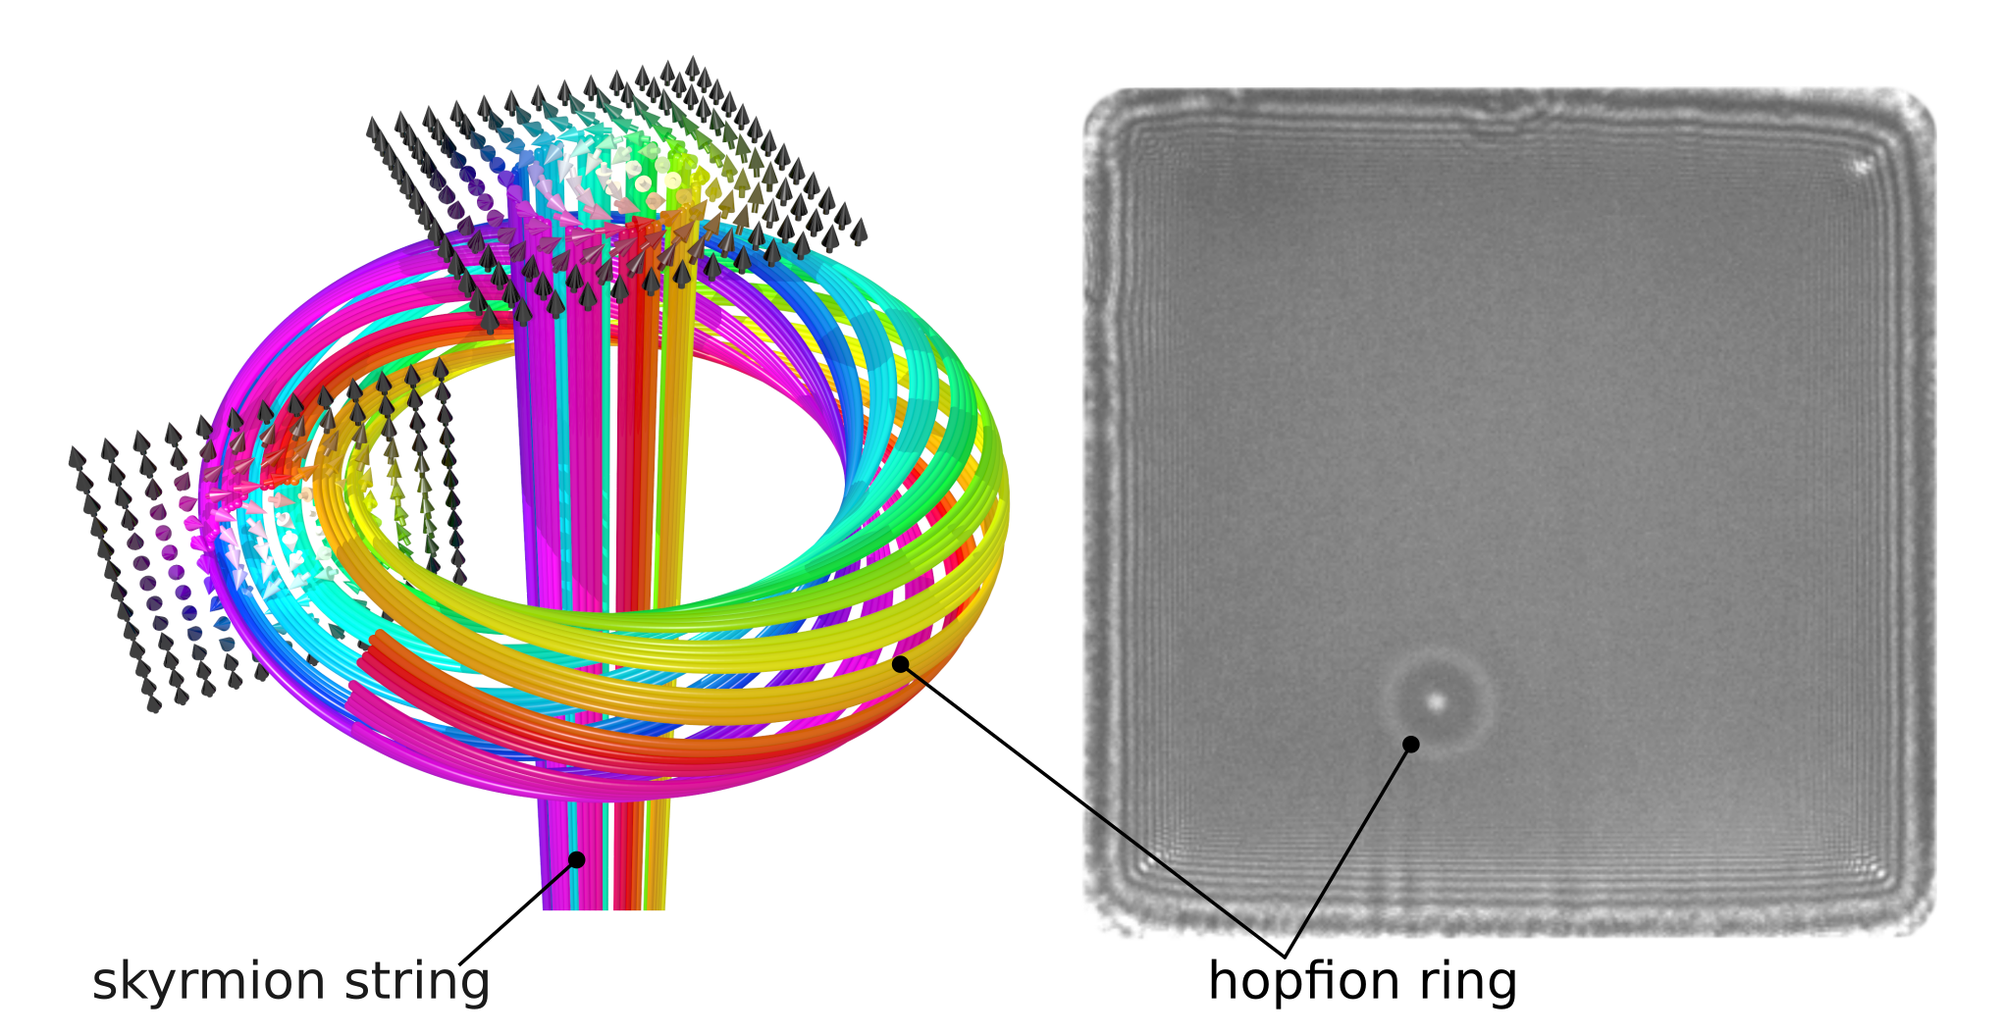 Könnten diese winzigen Wirbel die Informationsträger der Zukunft sein? Bei den neu nachgewiesenen Hopfionen handelt es sich um komplexe magnetische 3-D-Strukturen, die sich ringförmig um Skyrmionfäden herum bewegen&nbsp;– entdeckt wurden sie in einem Eisengermaniumkristall.